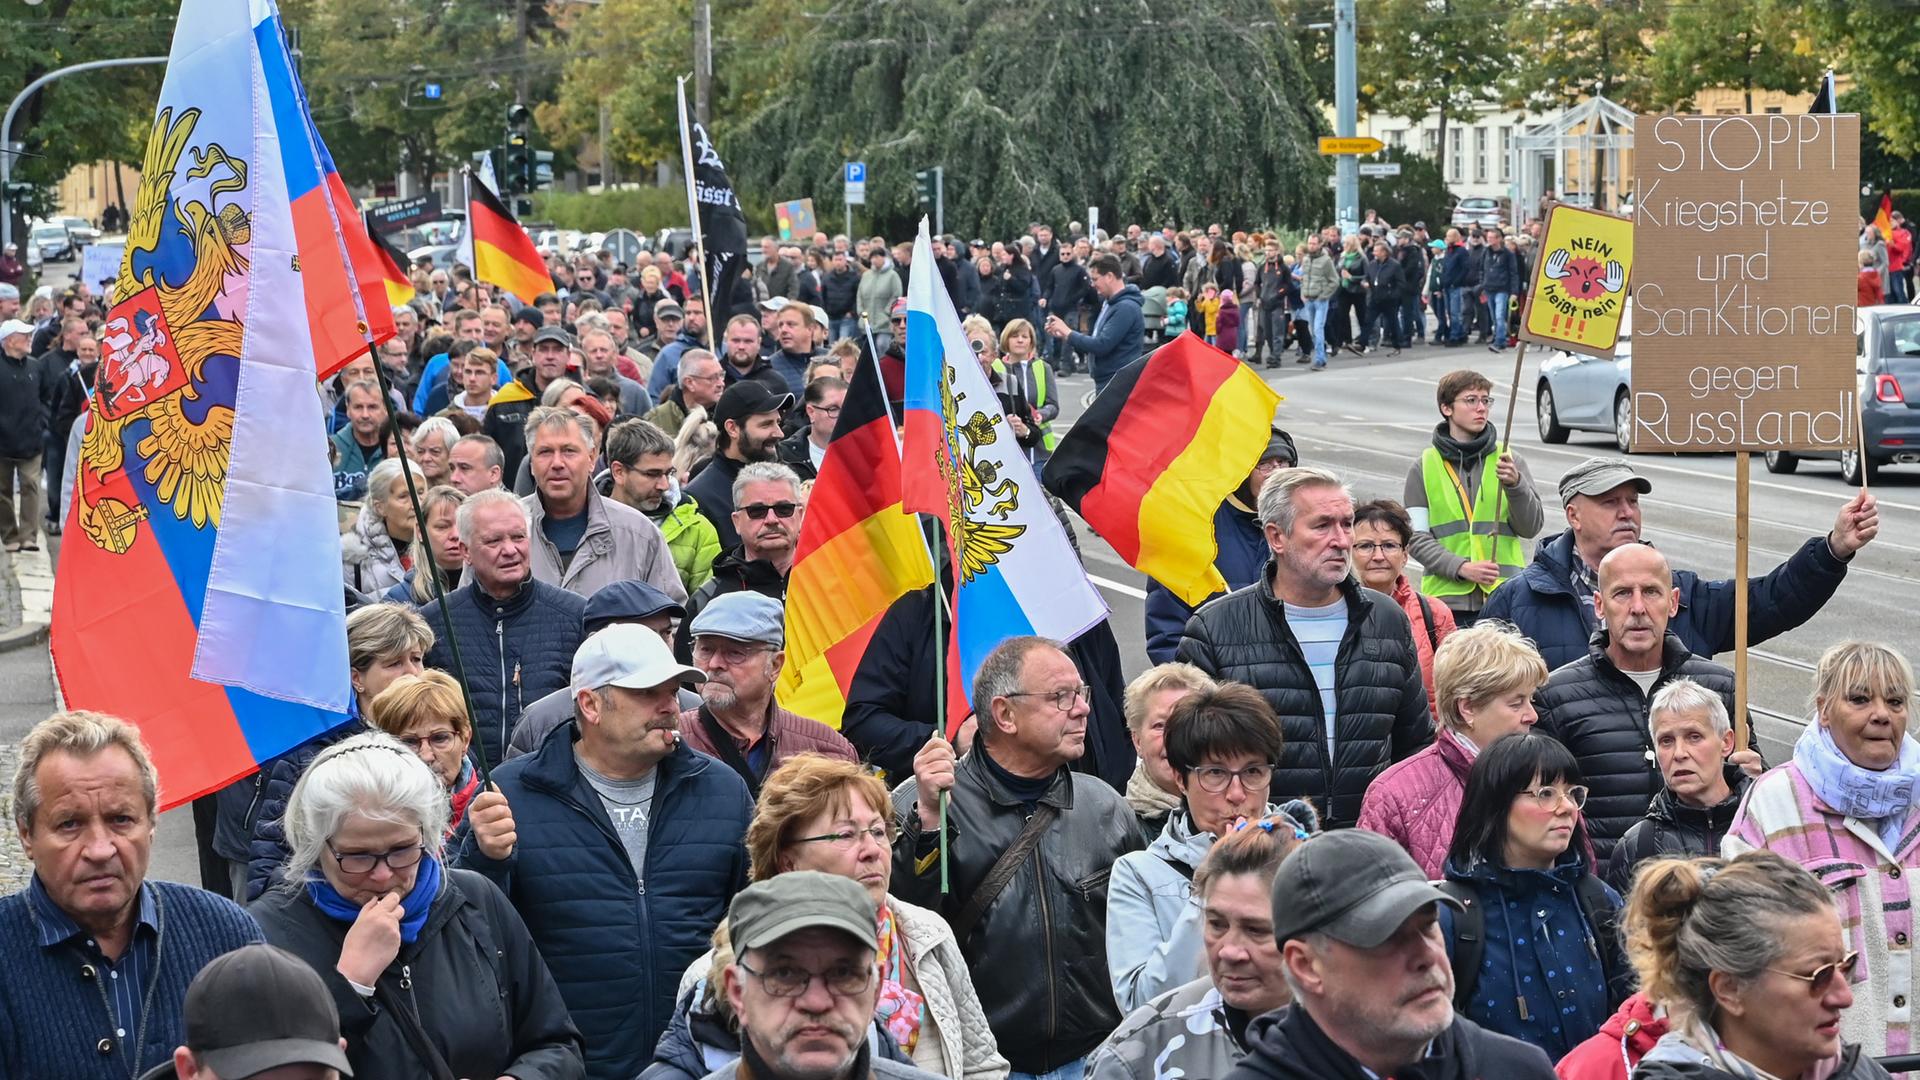 Menschen nehmen an einer Demonstration im Stadtzentrum von Frankfurt (Oder) teil. Anlass waren die Energiekrise, der Krieg in der Ukraine und die Corona-Politik. 